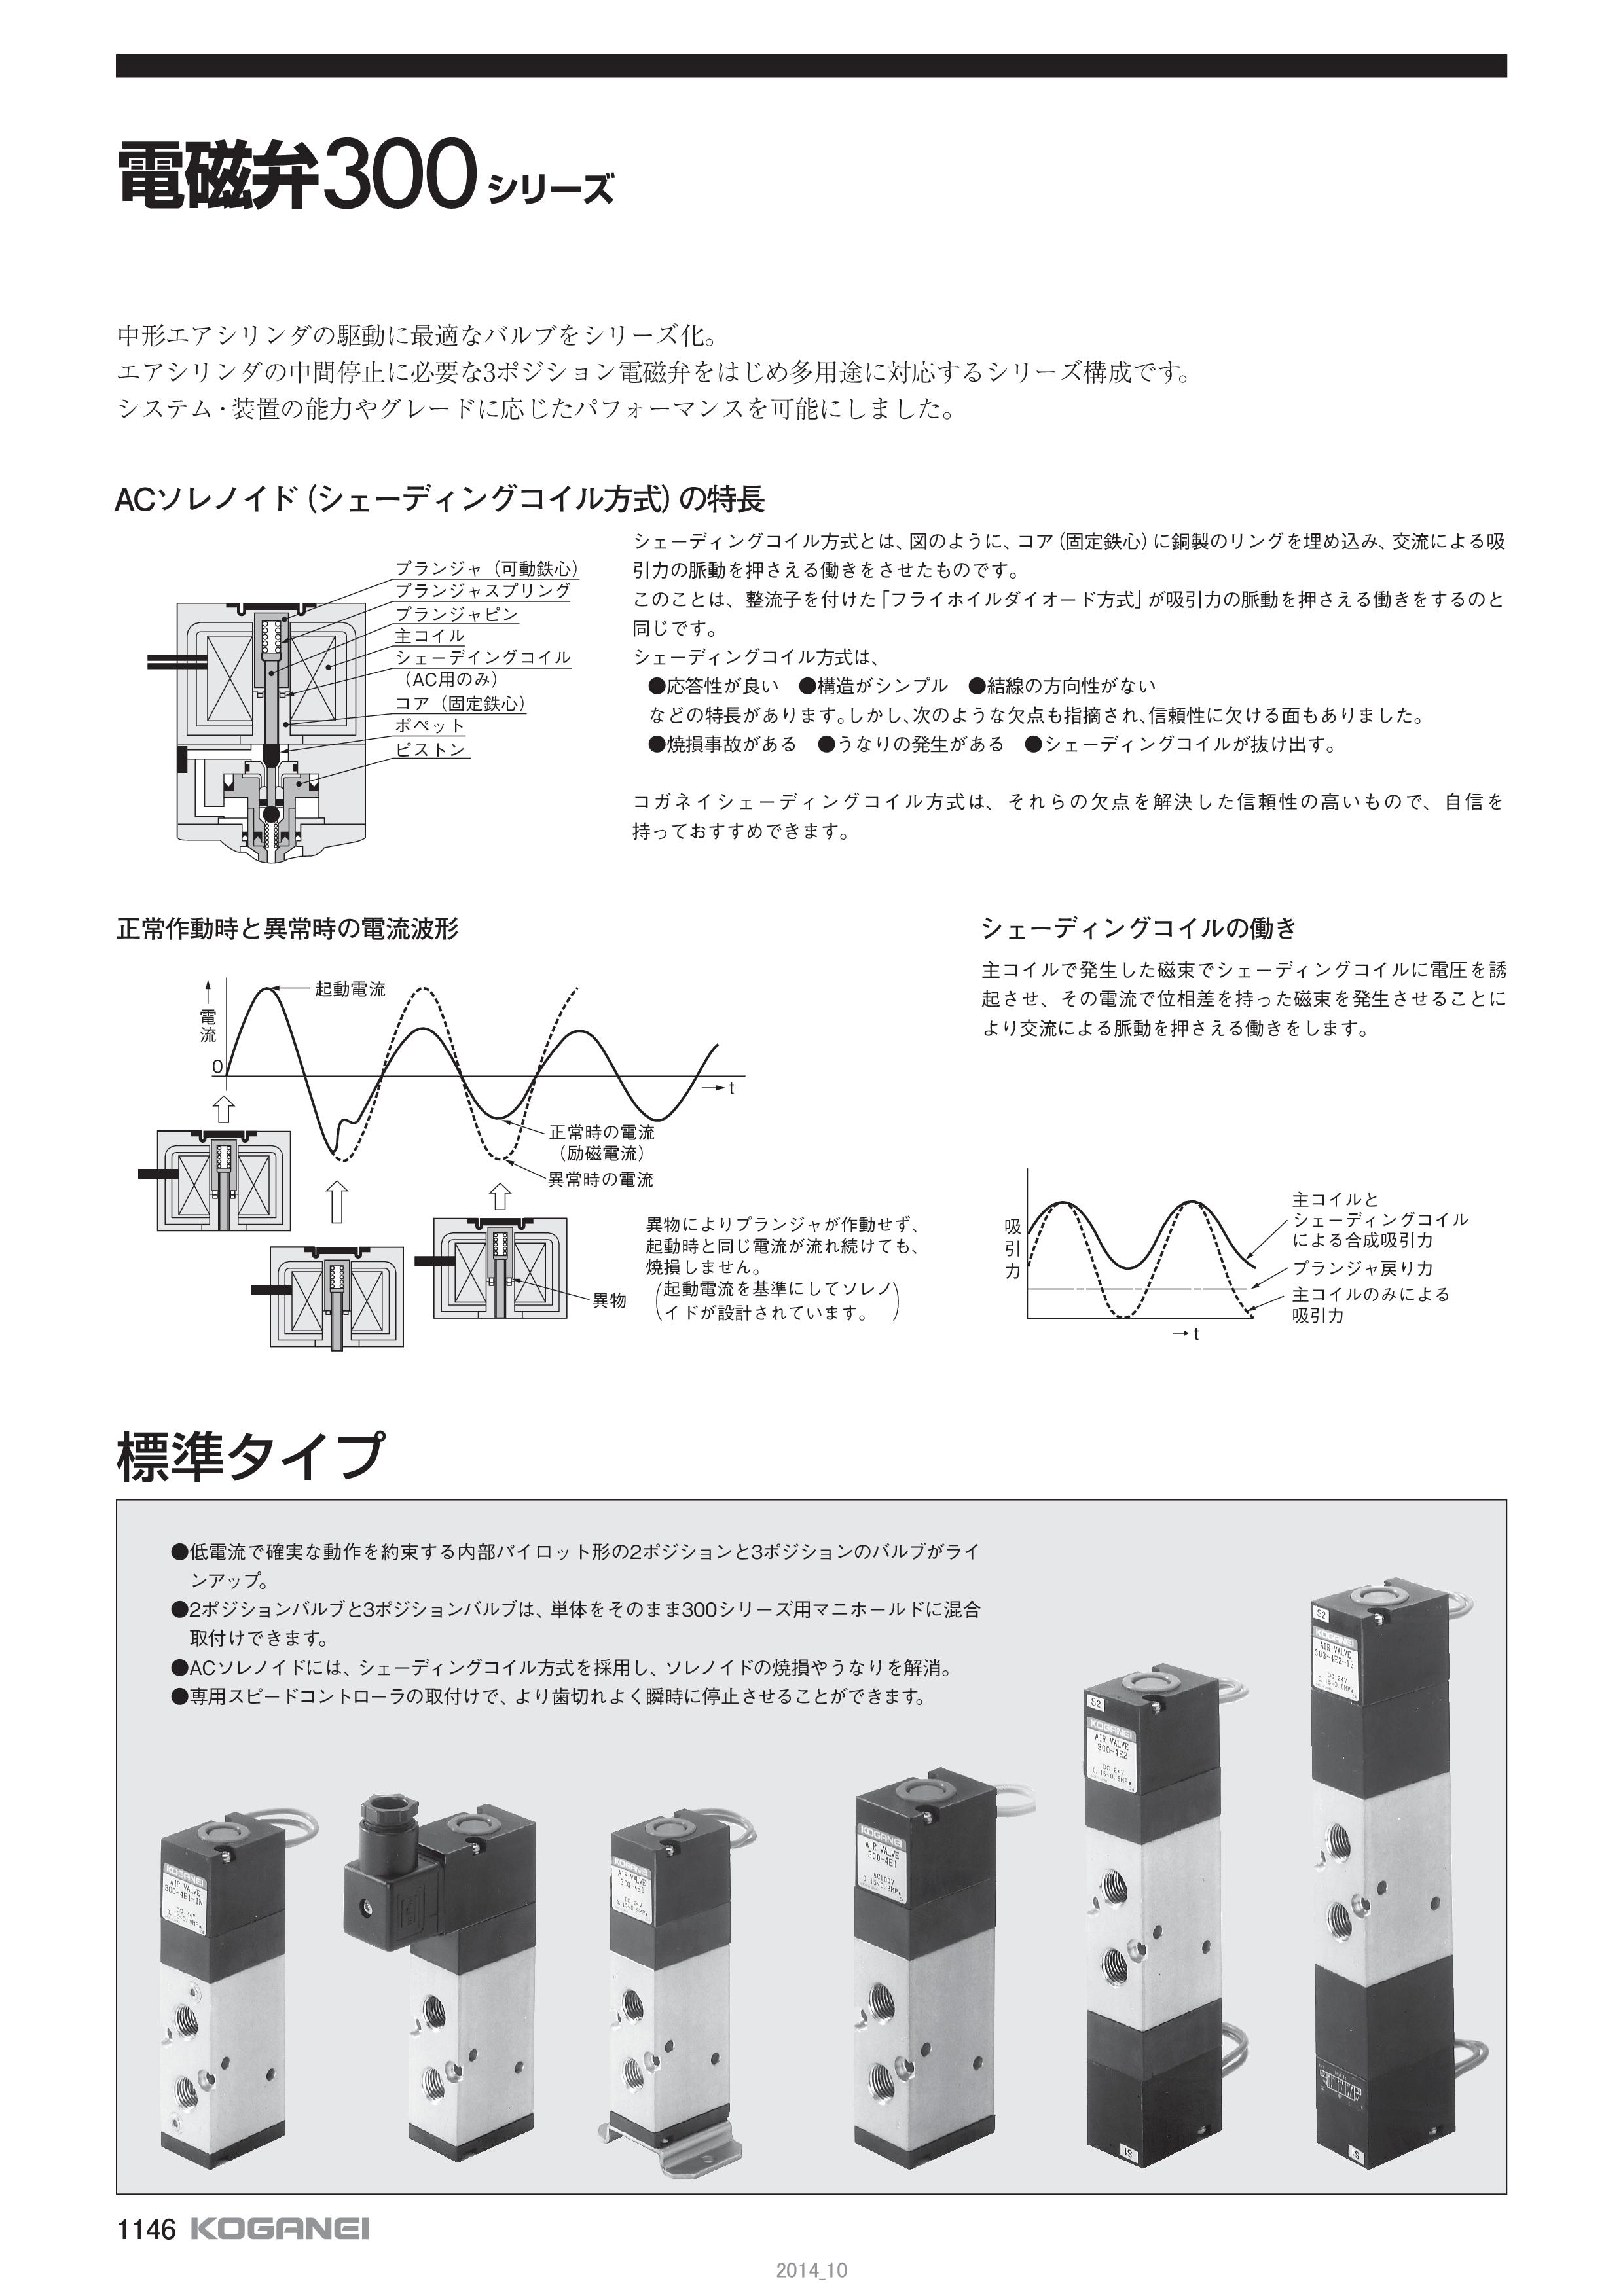 電磁弁３００シリーズ（株式会社コガネイ）のカタログ無料ダウンロード